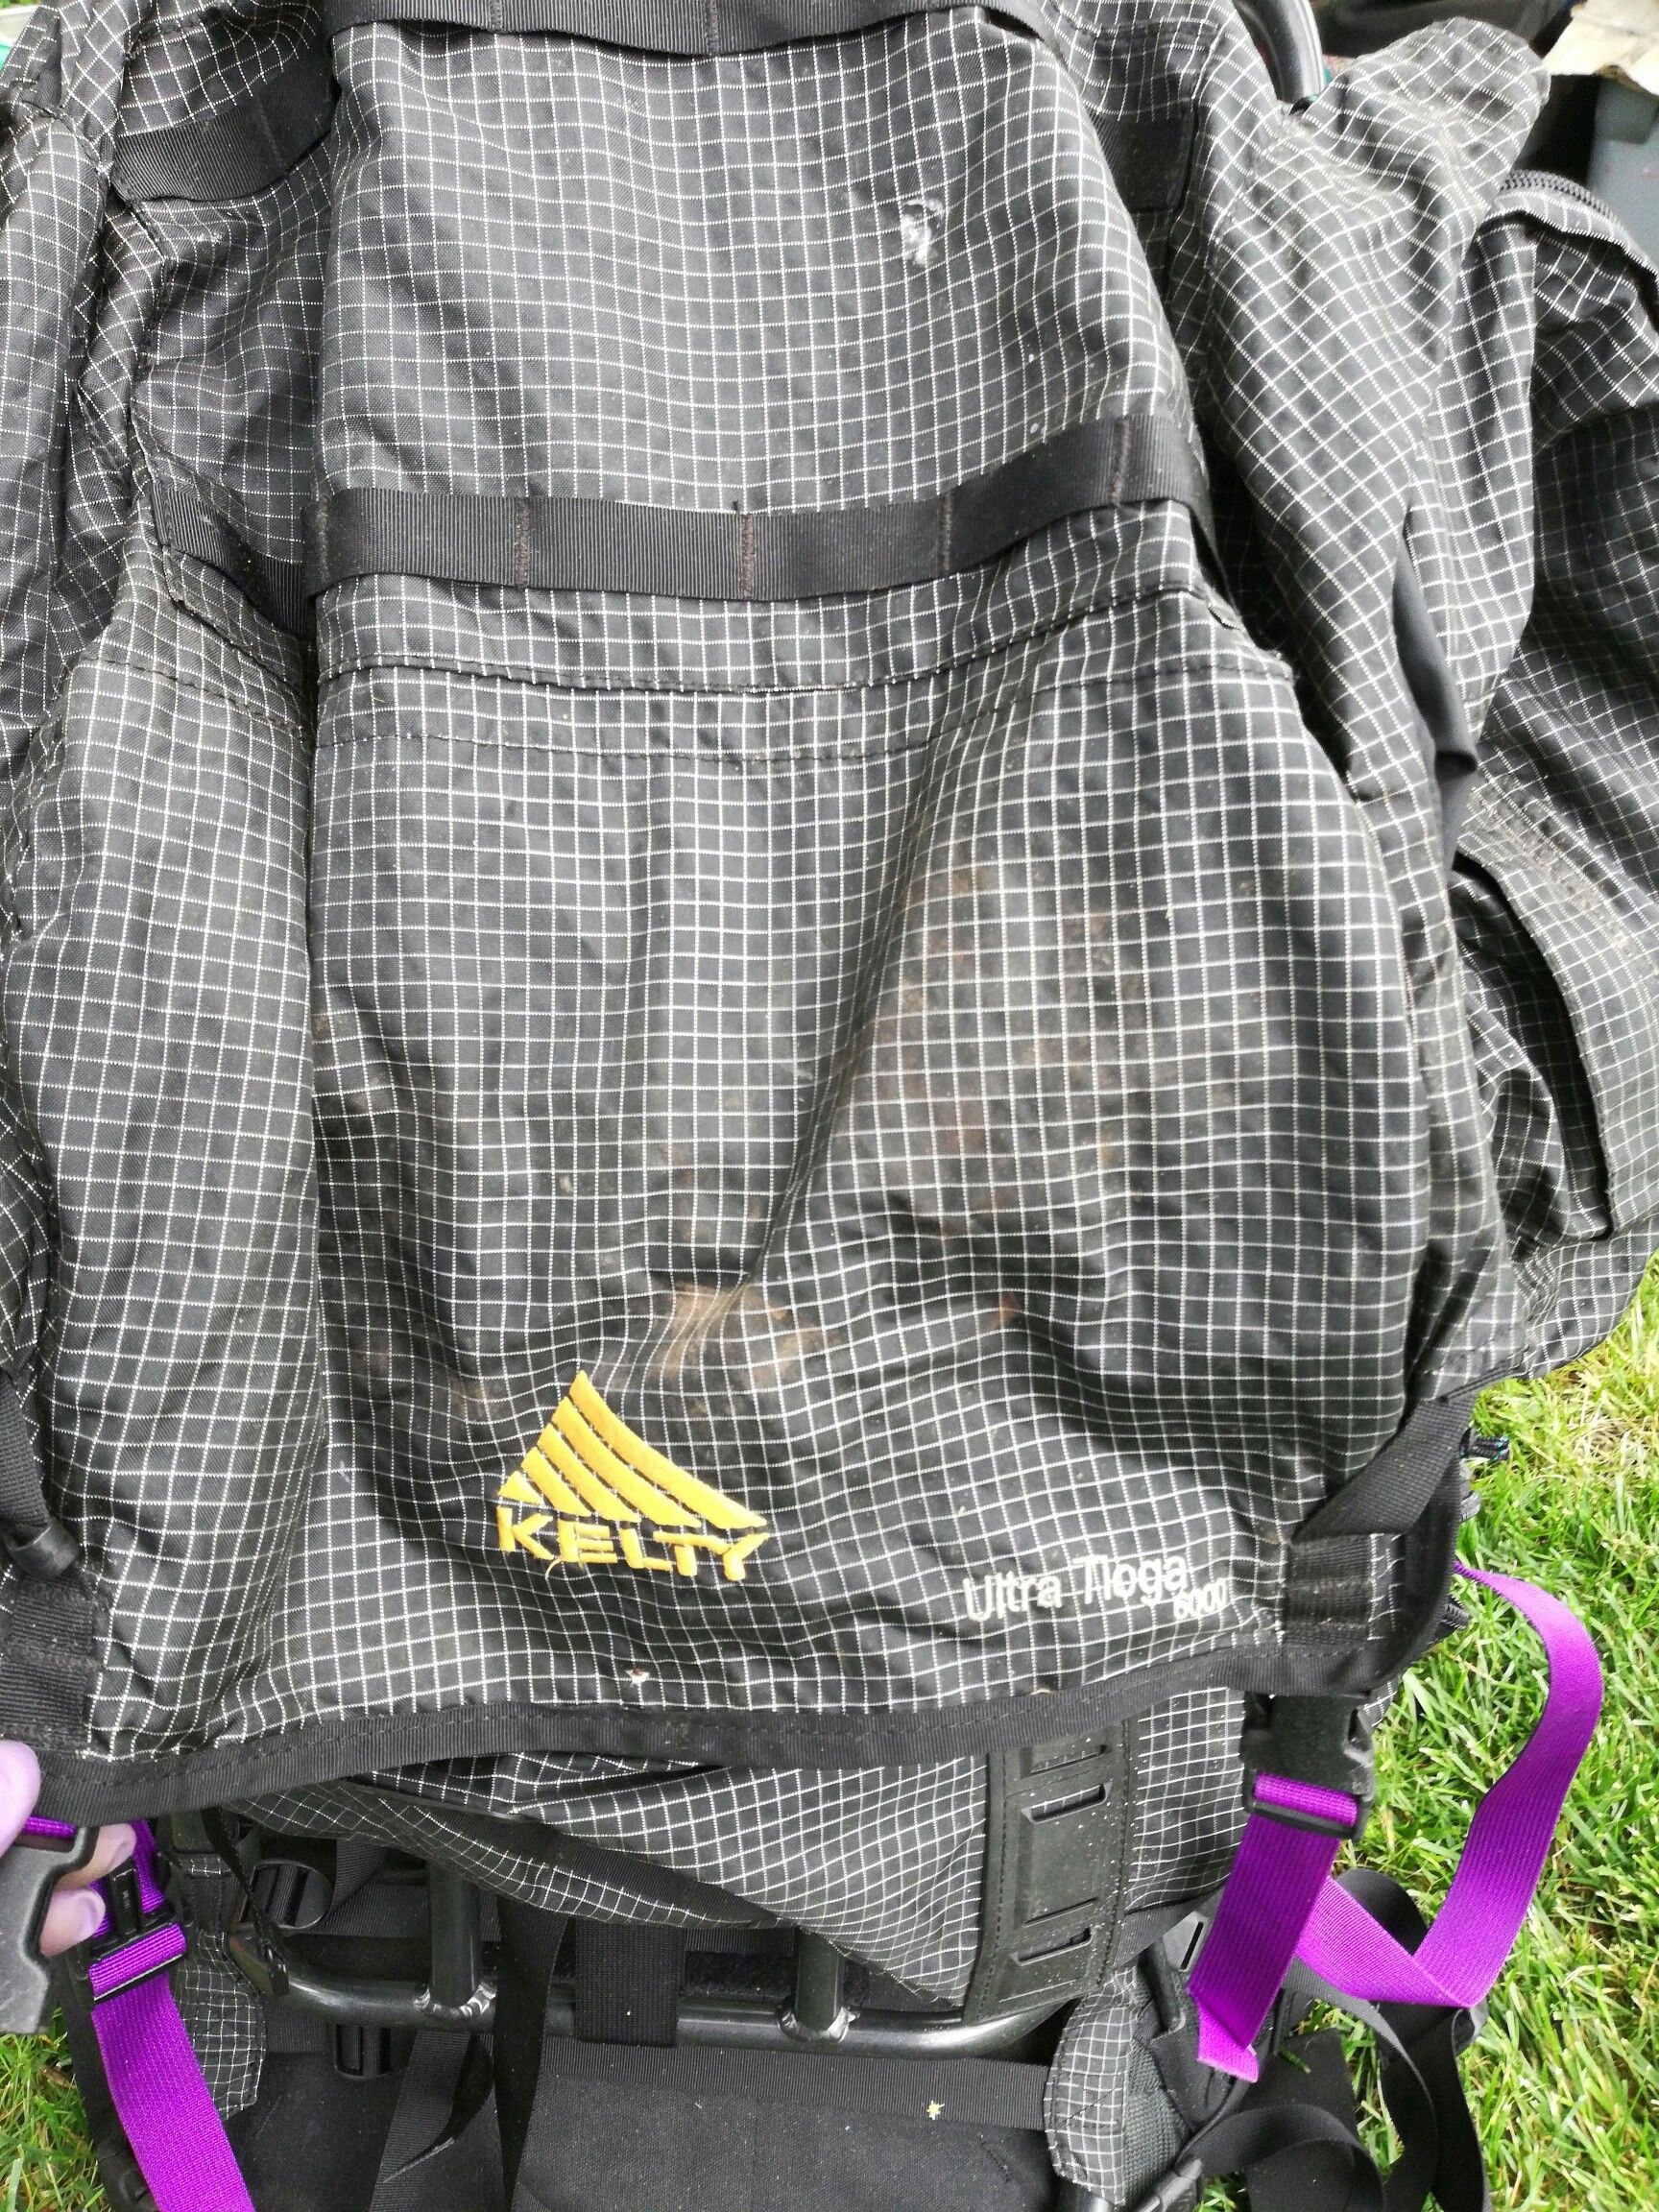 kelty ultra tioga 6000 hiking backpack(new)